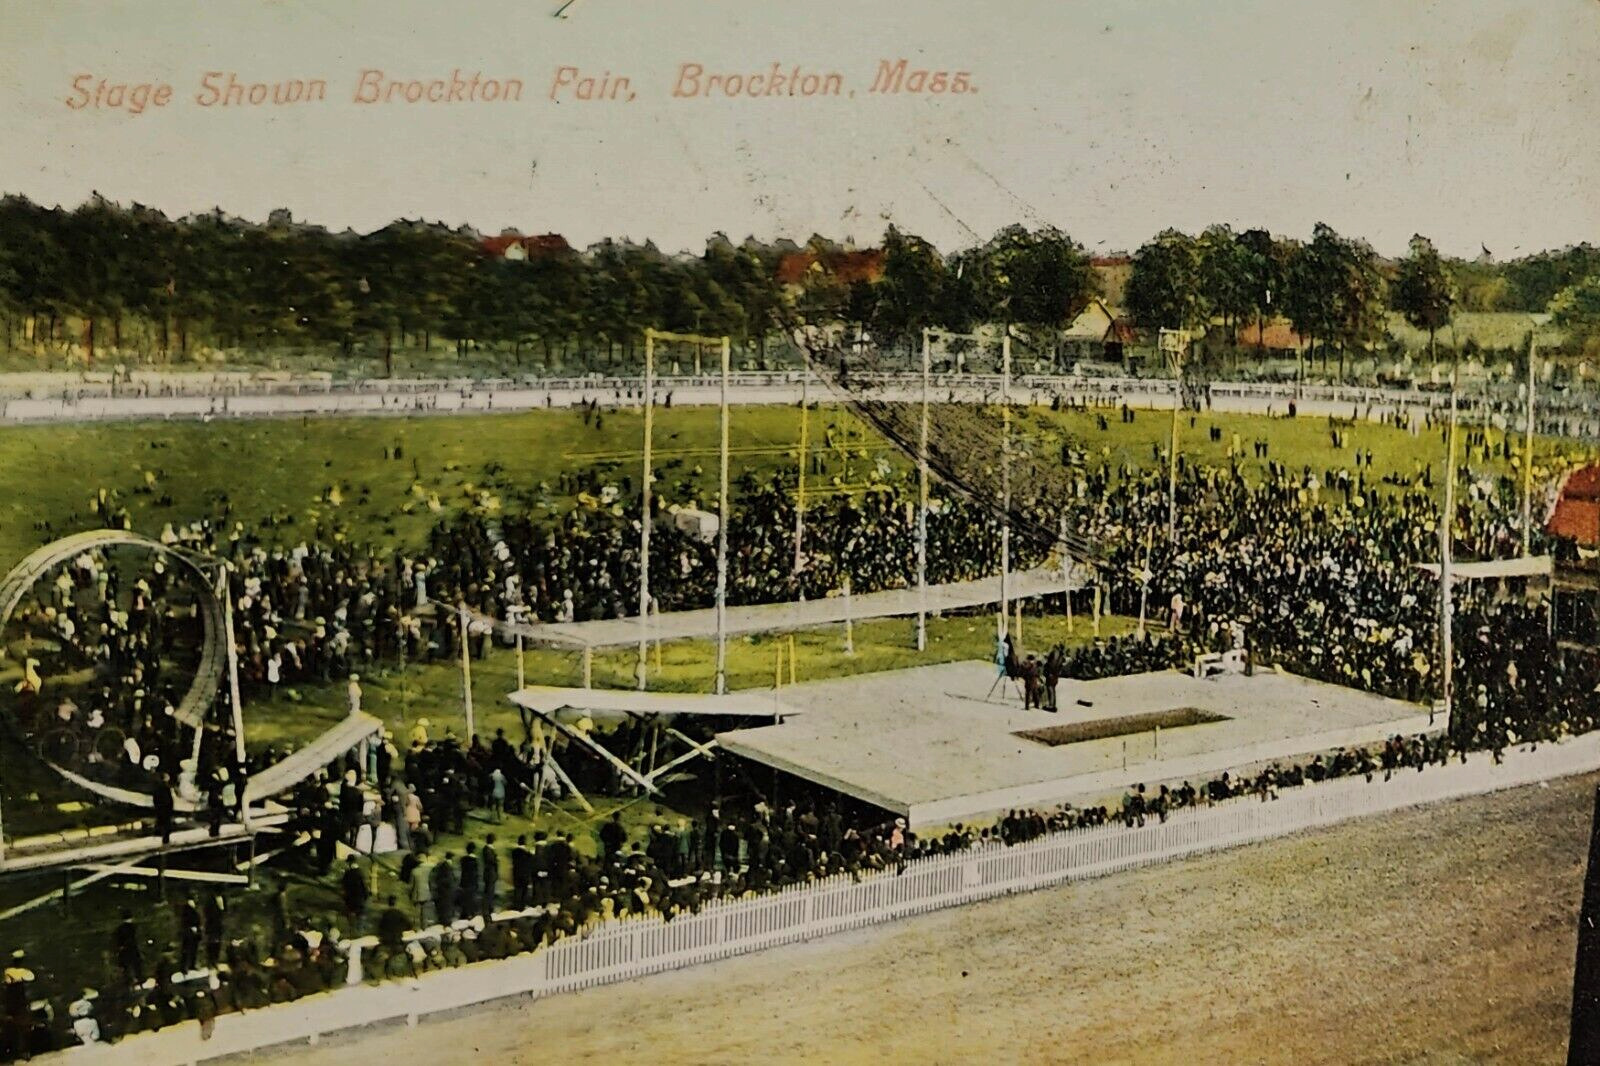 Stage, Crowds of People, Brockton Fair, Brockton, MA. Pre-1915.